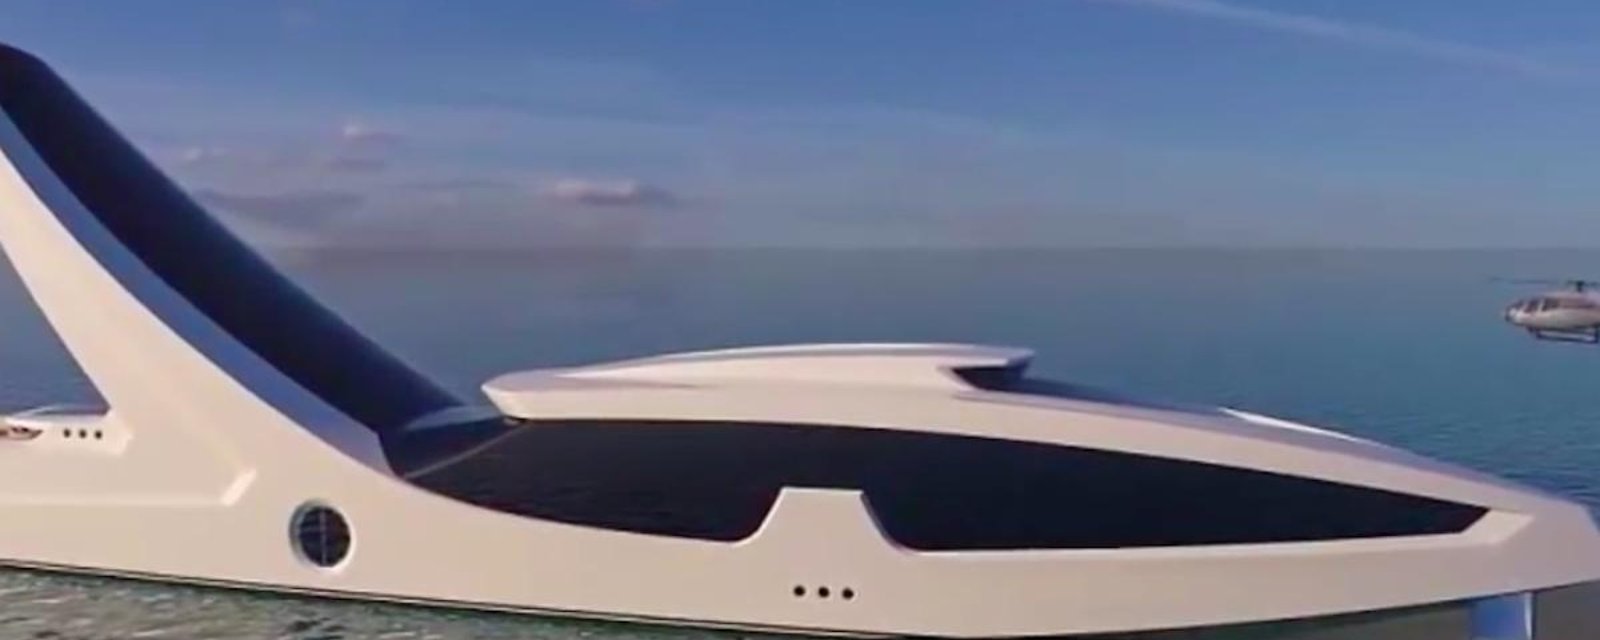 Ce super yacht de 250 millions de dollars a de quoi faire perdre la tête